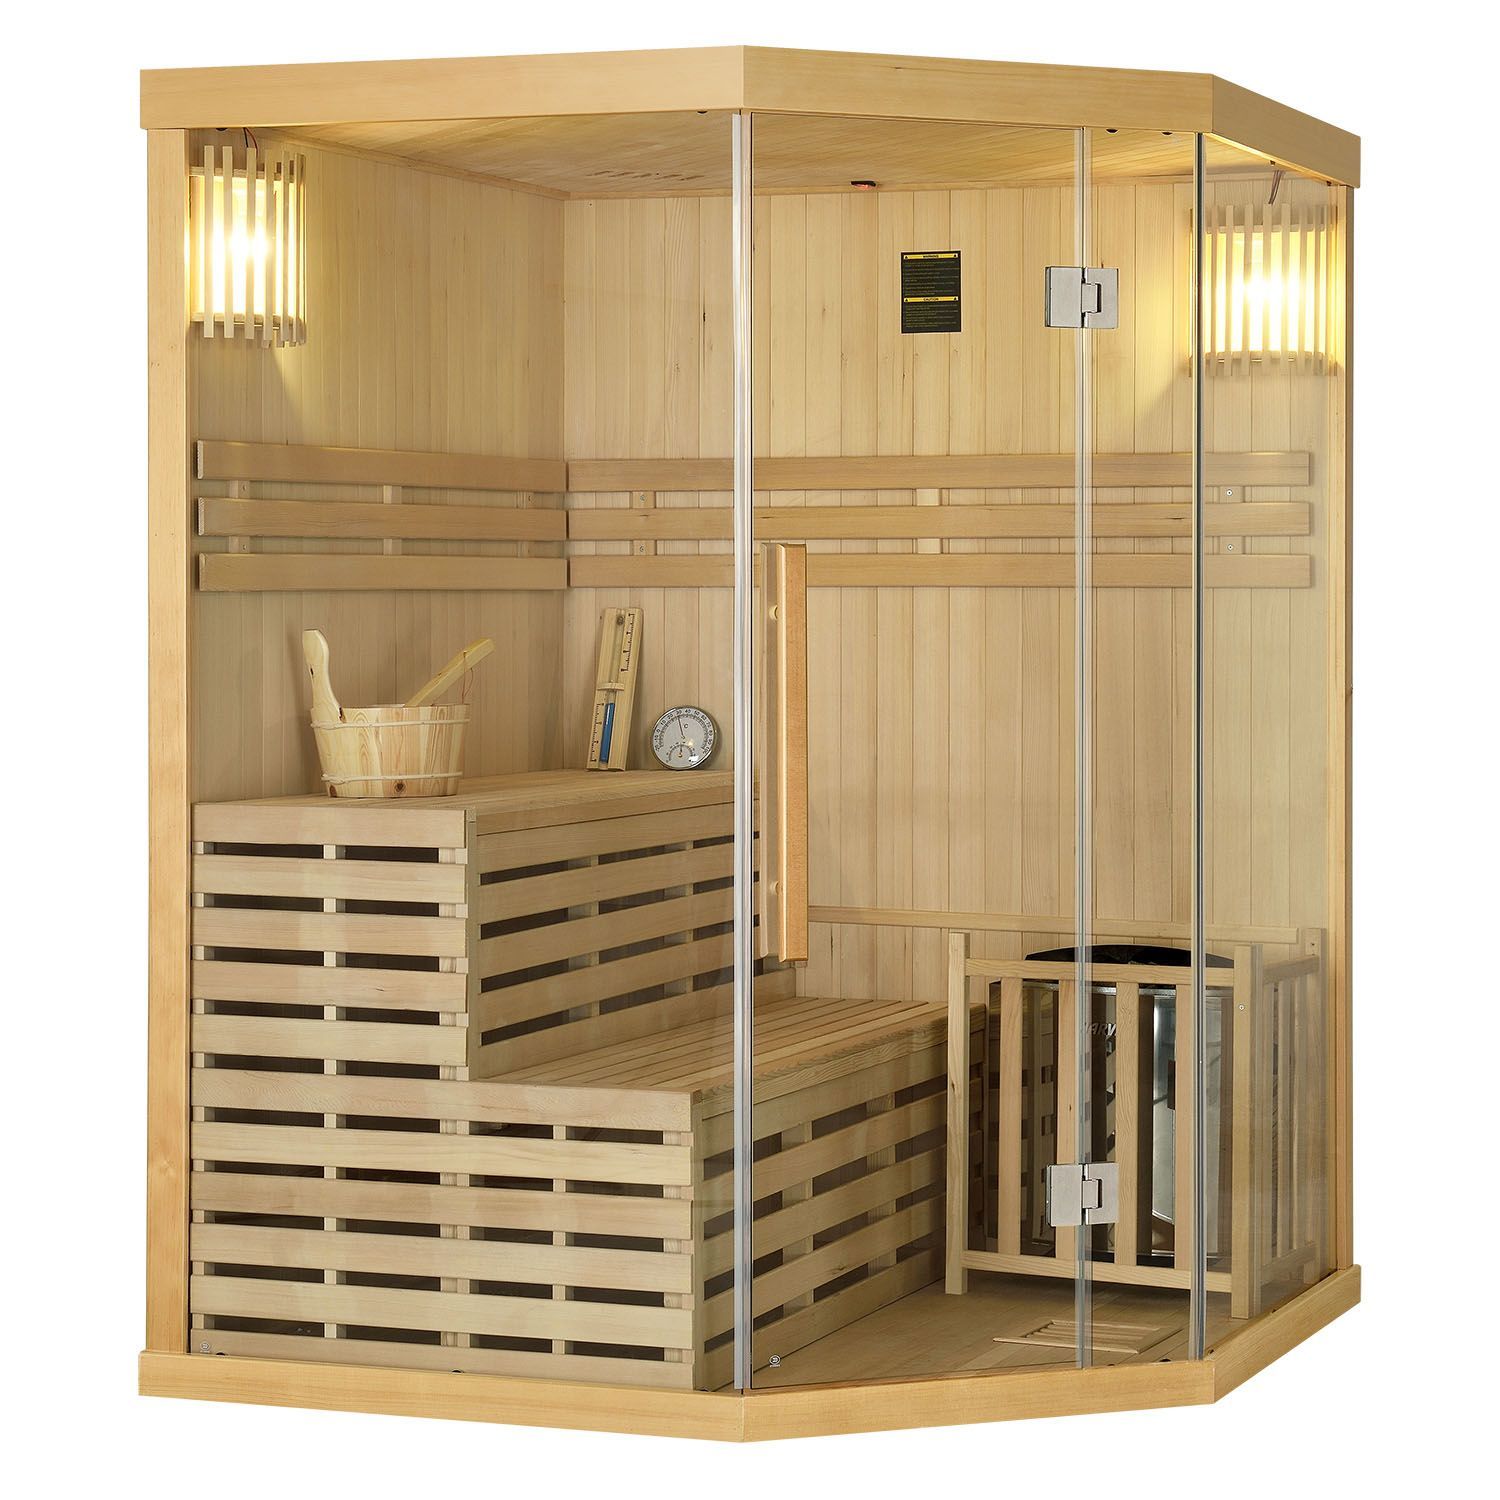 Sauna 150x150 - Die Produkte unter den Sauna 150x150